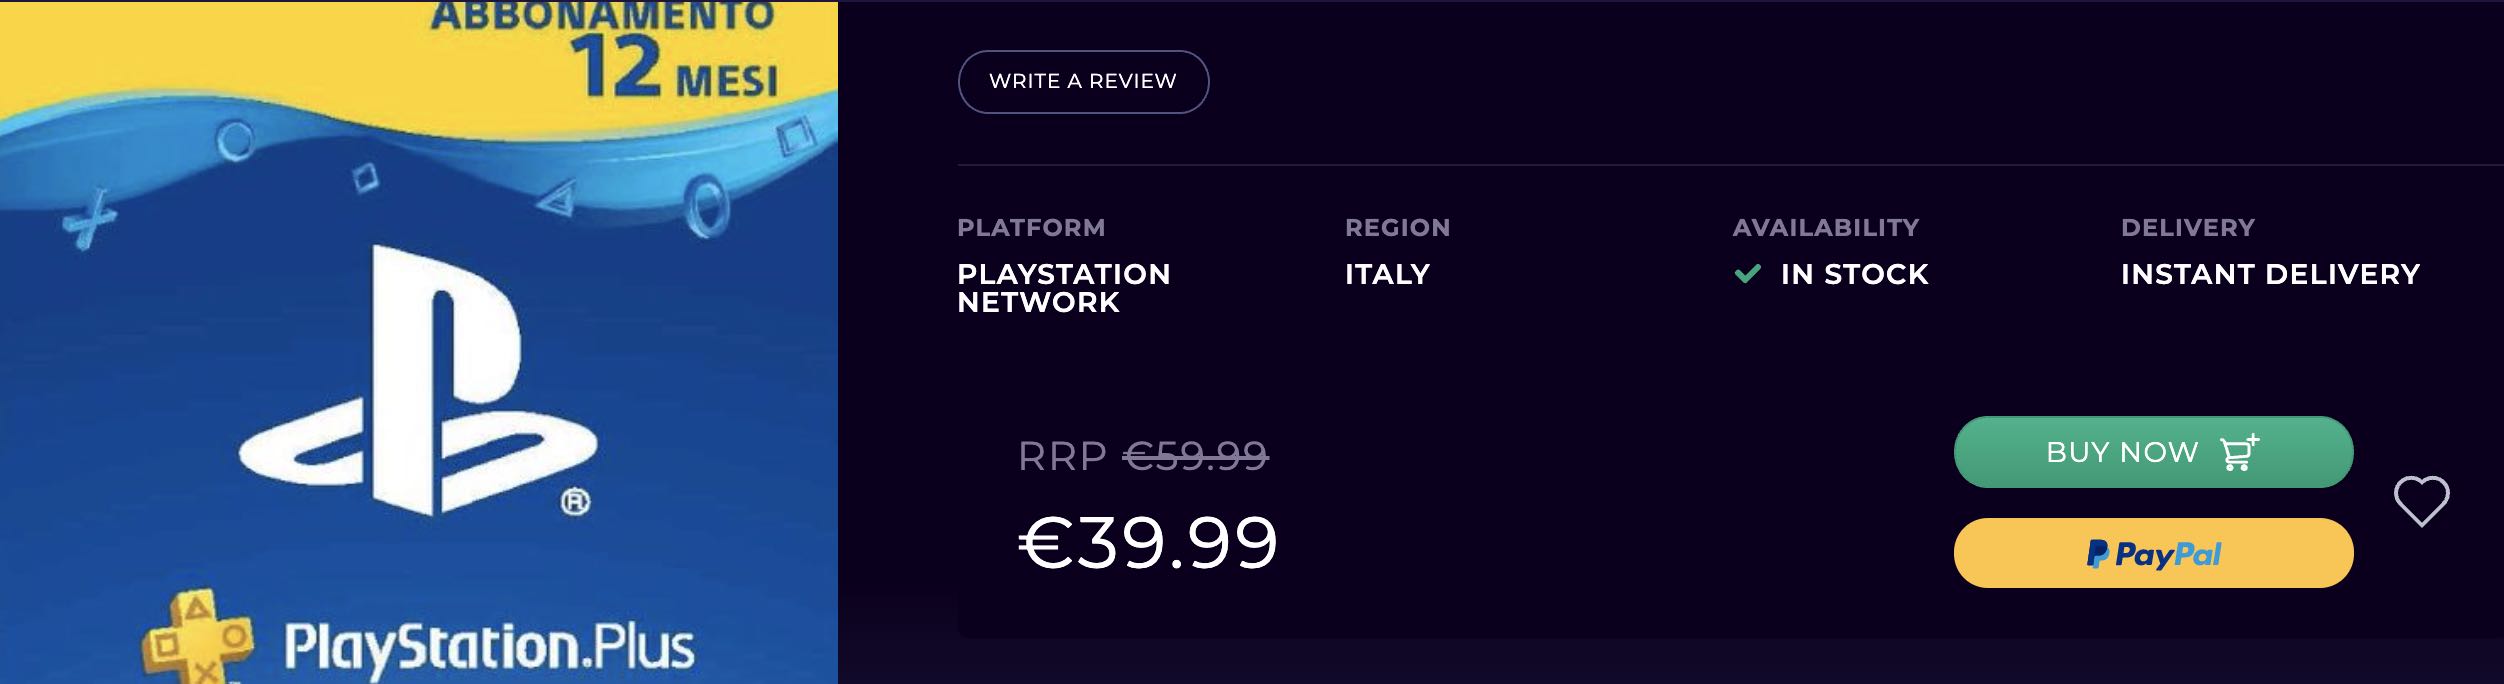 Abbonamento PlayStation Plus da 12 mesi in sconto di 20€ su CD Keys -  MrDeals